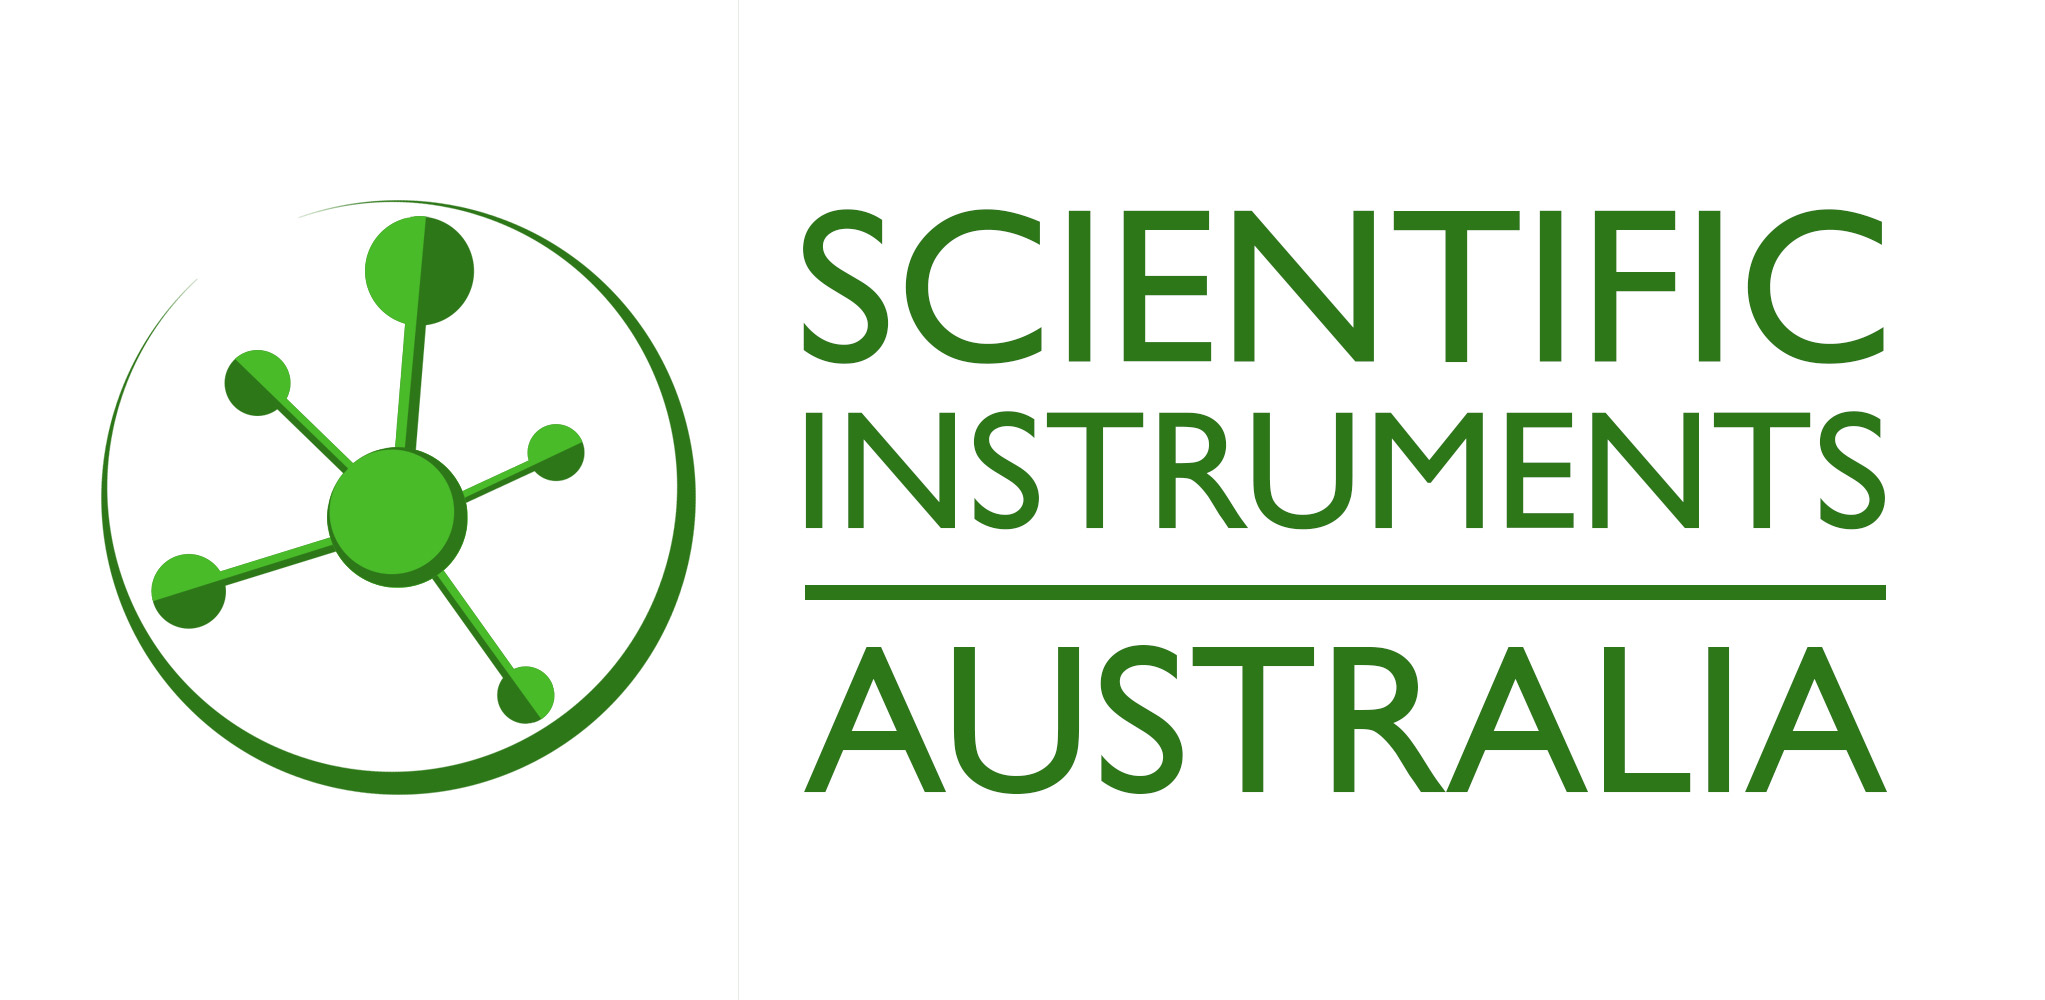 Scientific Instruments Australia